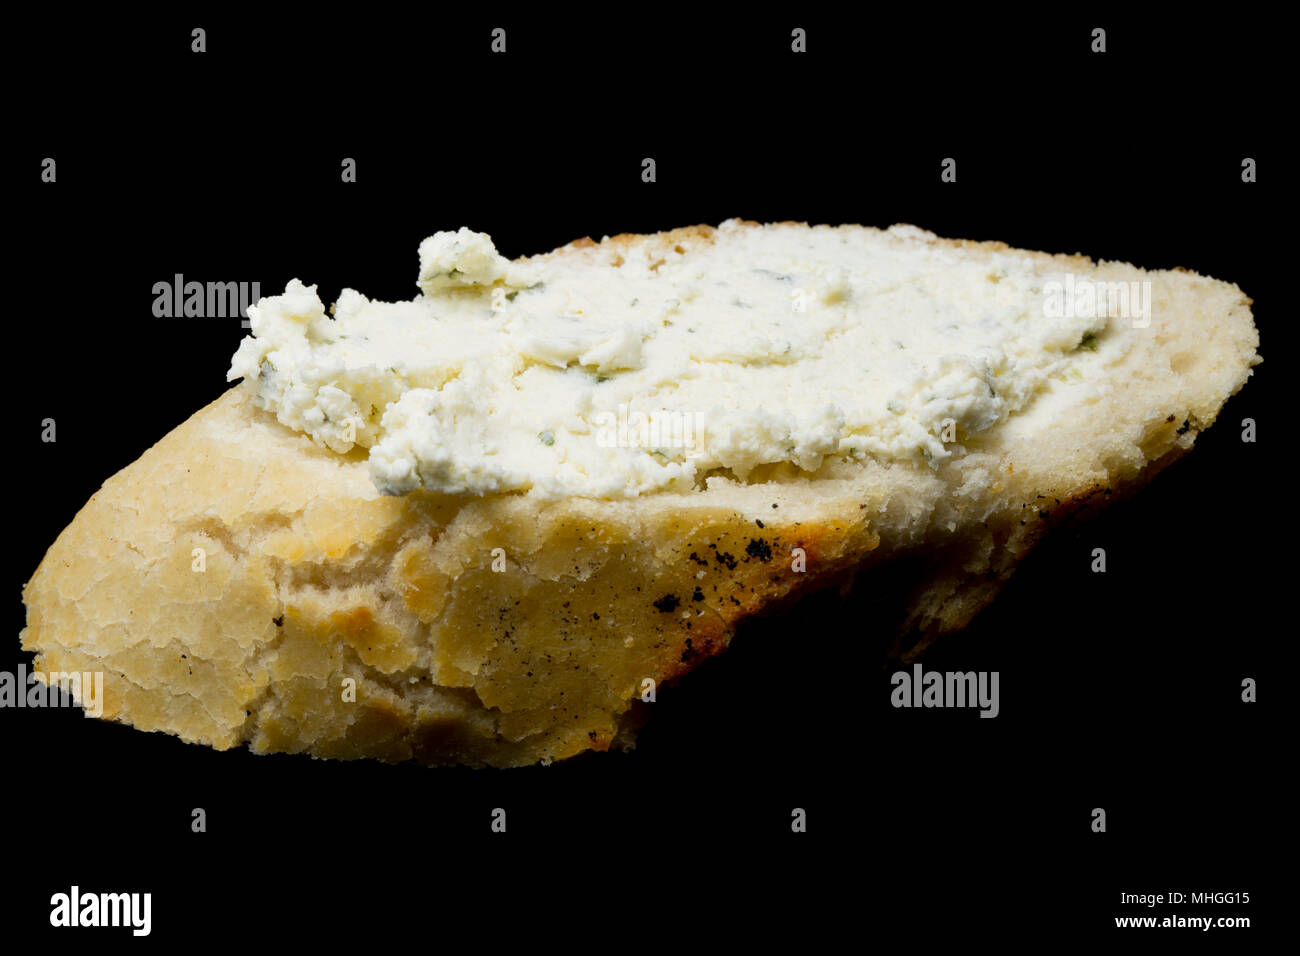 Französische Boursin Käse gekauft von einem Supermarkt in Großbritannien verteilt auf einer Scheibe Weißbrot. Boursin ist ein voll fett Weichkäse aus Kuhmilch flav gemacht Stockfoto